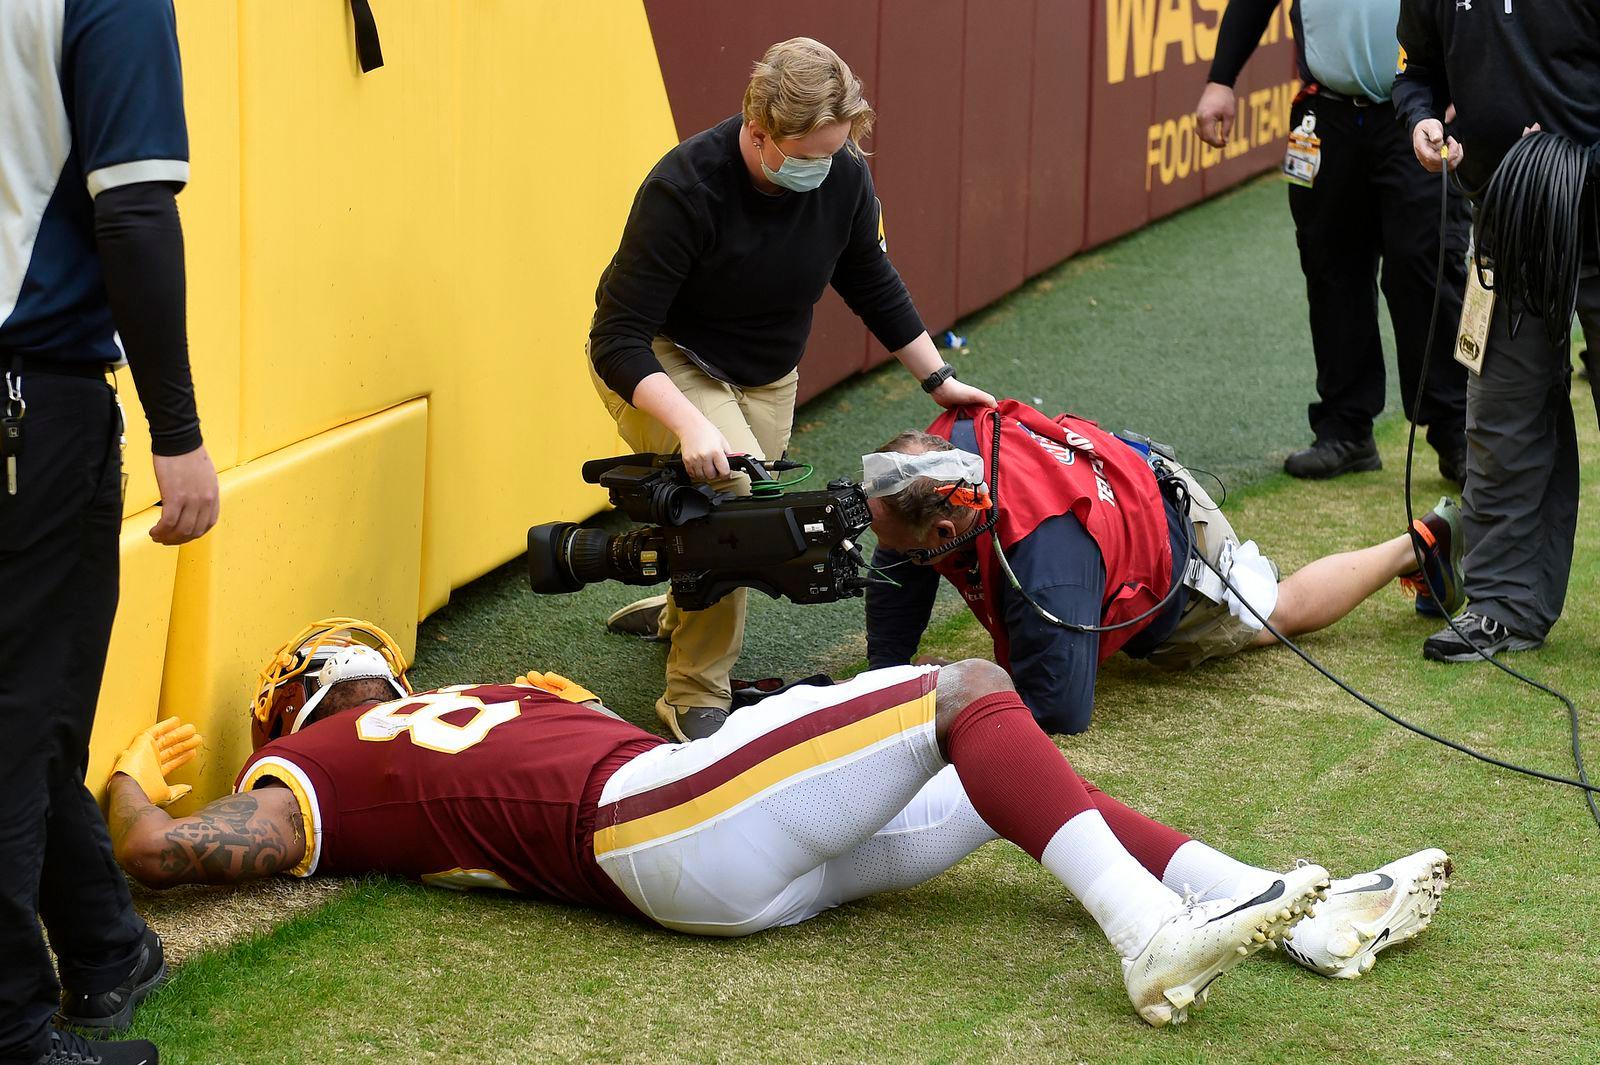 Igrač NFL-a se sudario s kamermanom, prošao s povredama vrata